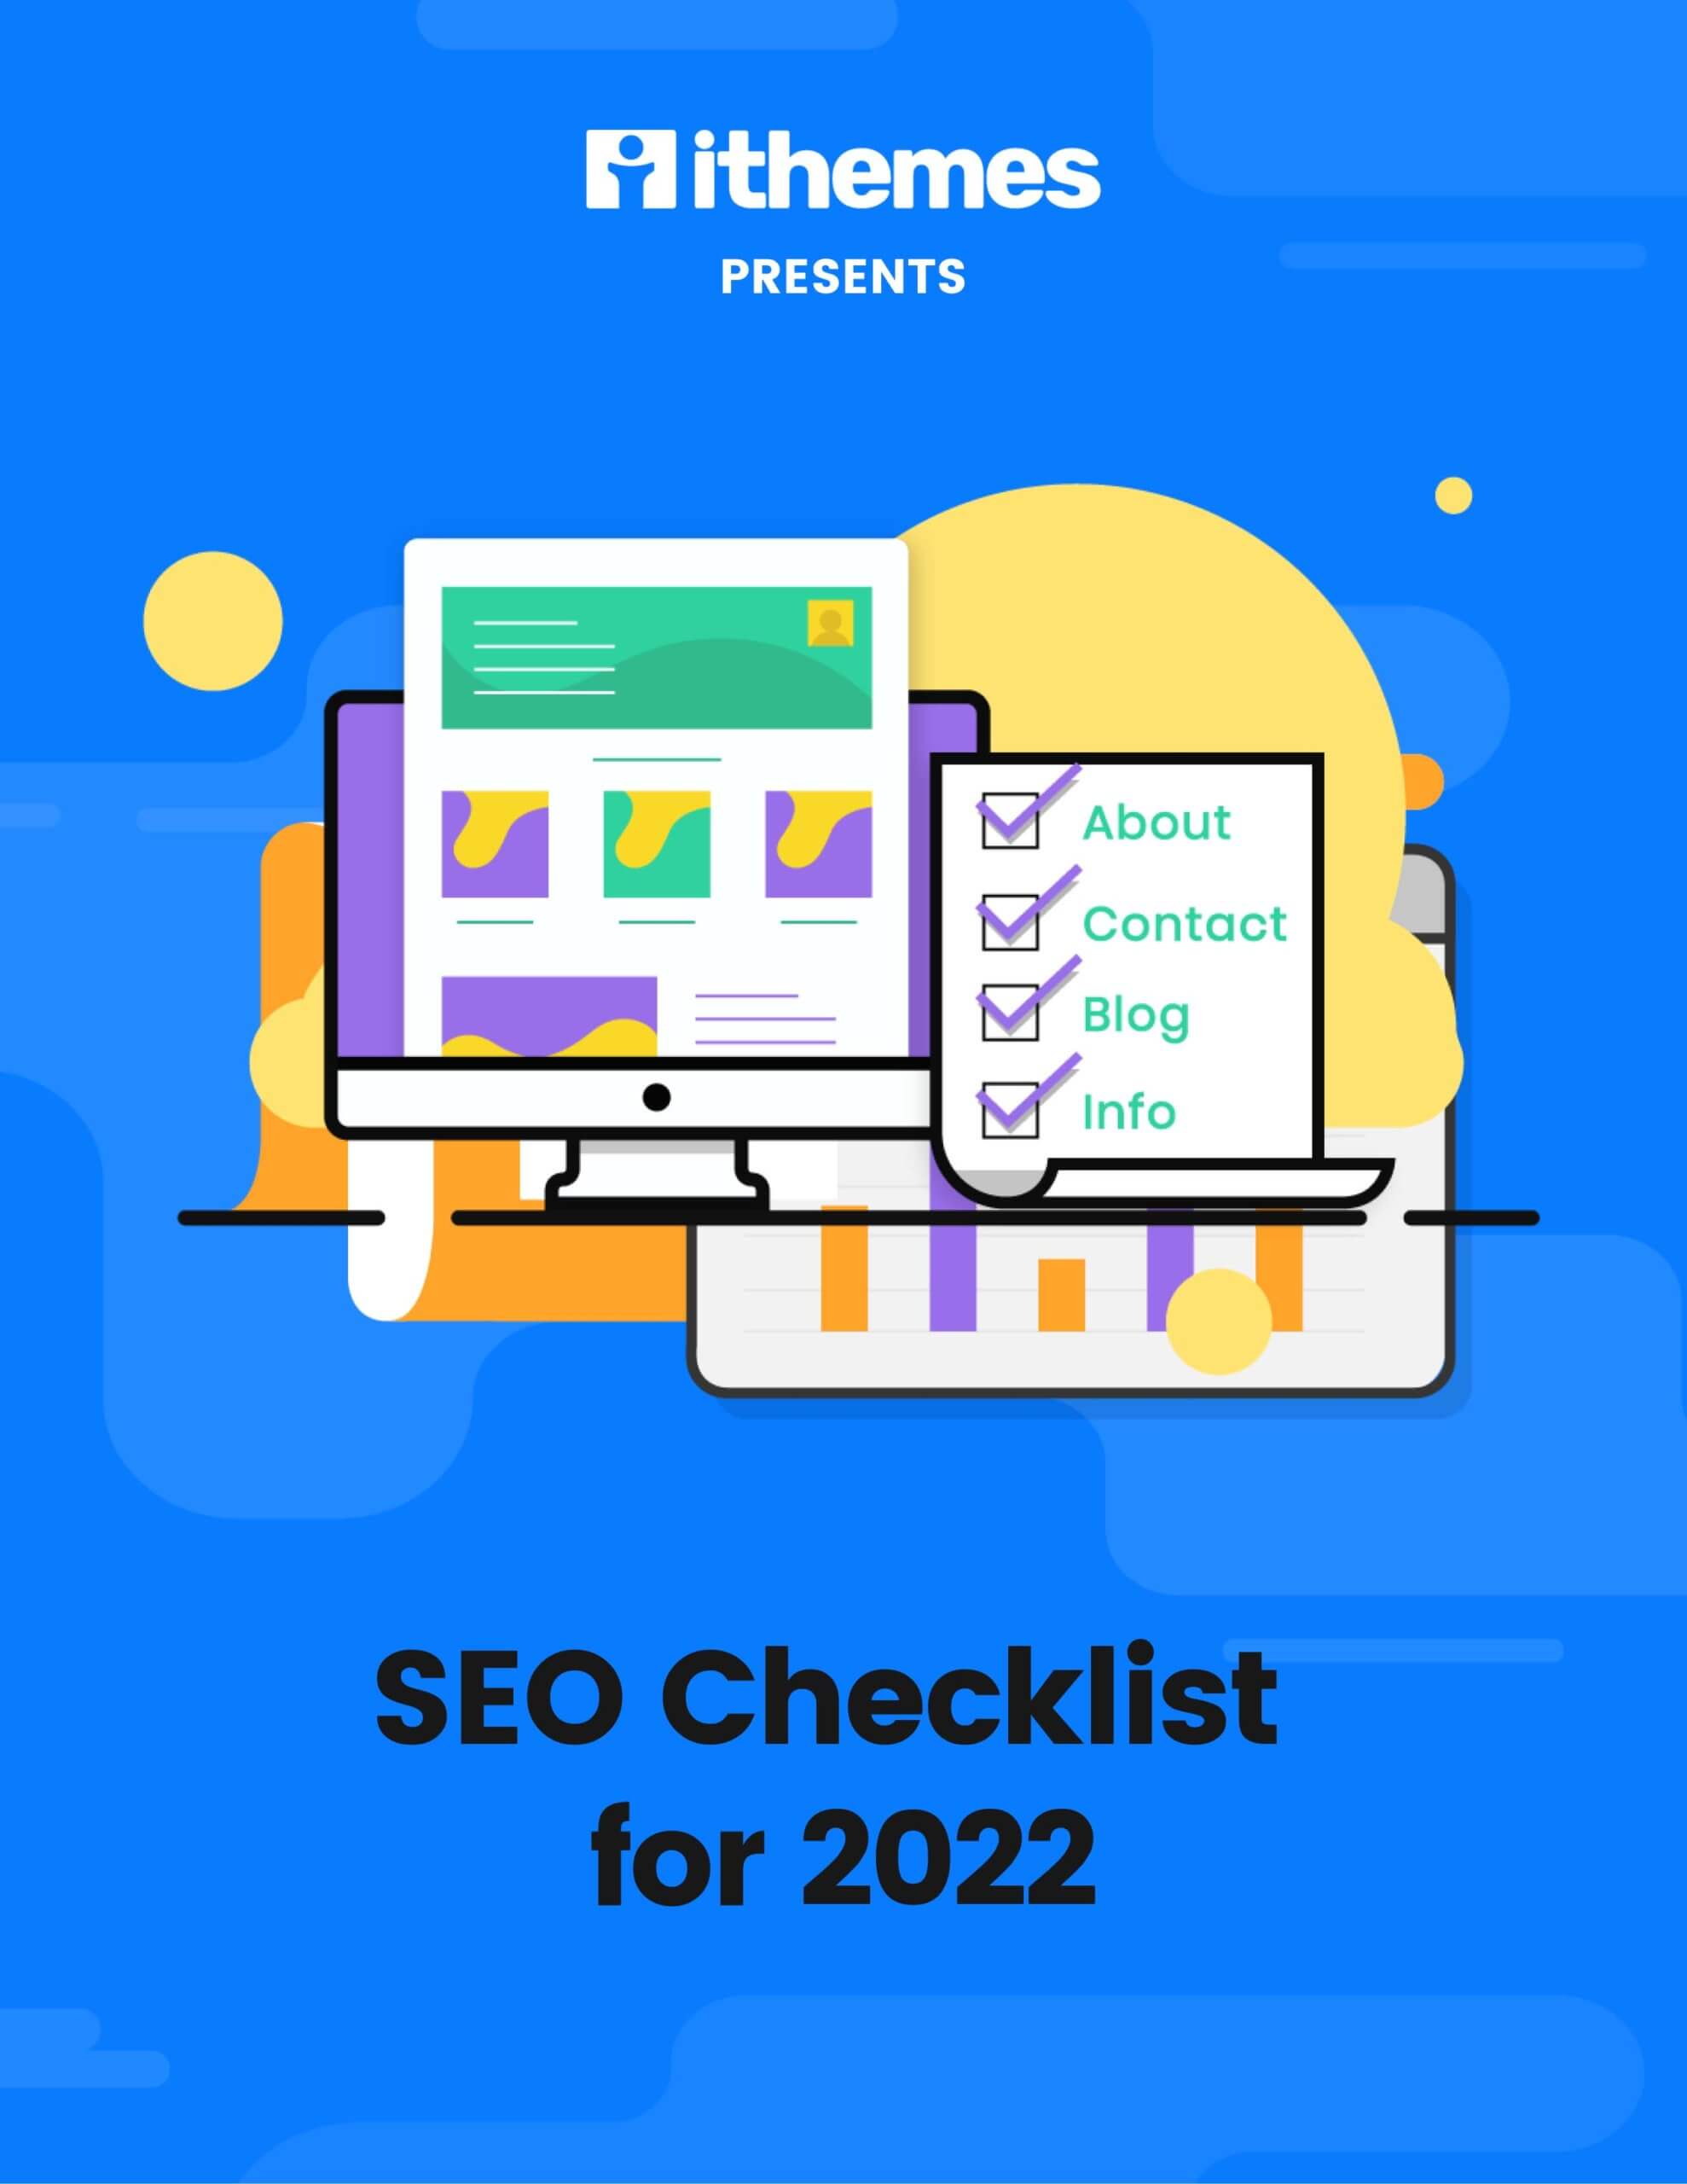 SEO Checklist for 2022